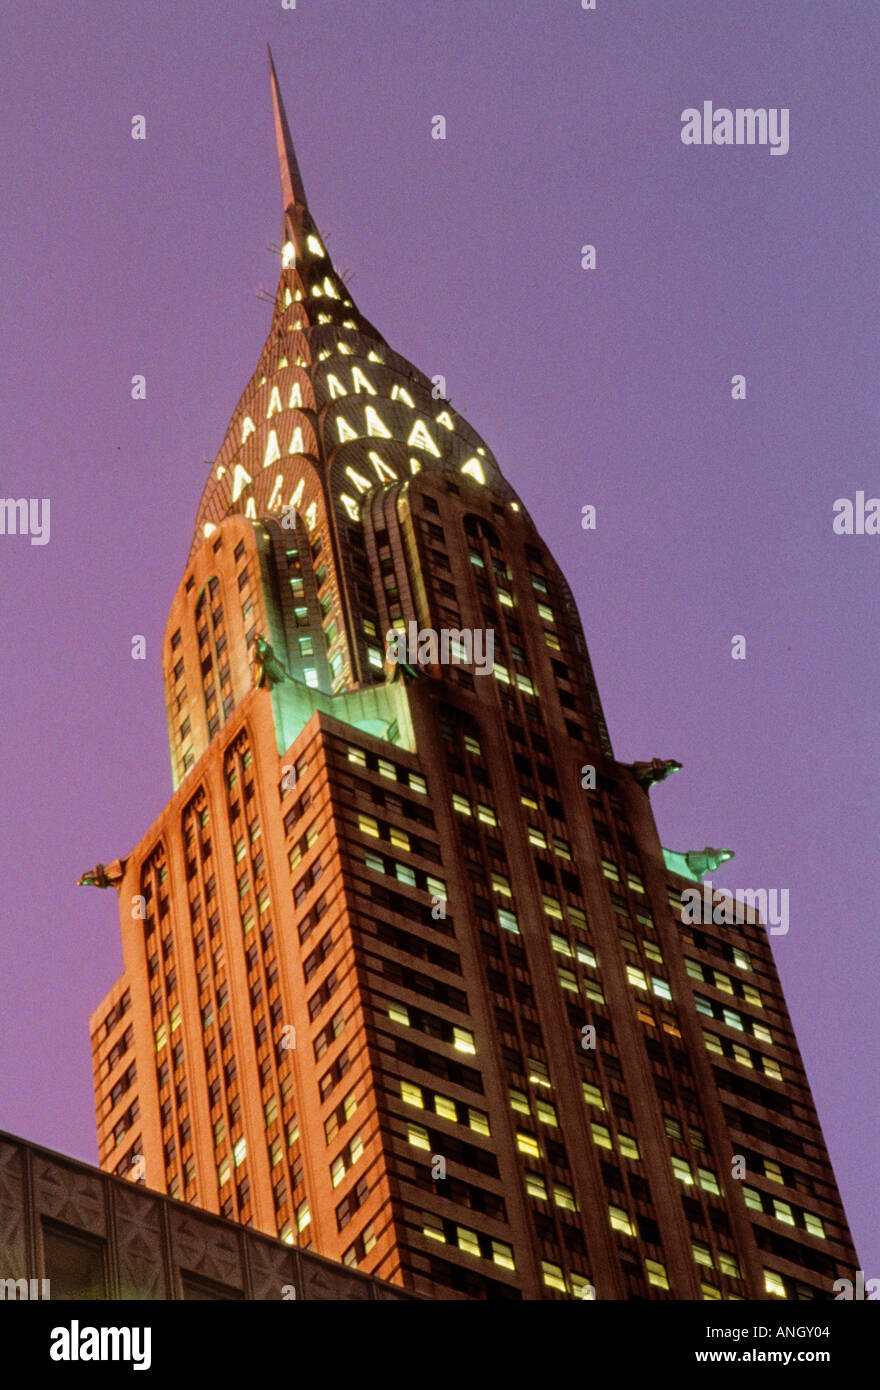 Le Chrysler Building TOP. Gratte-ciel art déco illuminé, au crépuscule. Midtown Manhattan, New York. National Historic Landmark, New York City Landmark. Banque D'Images